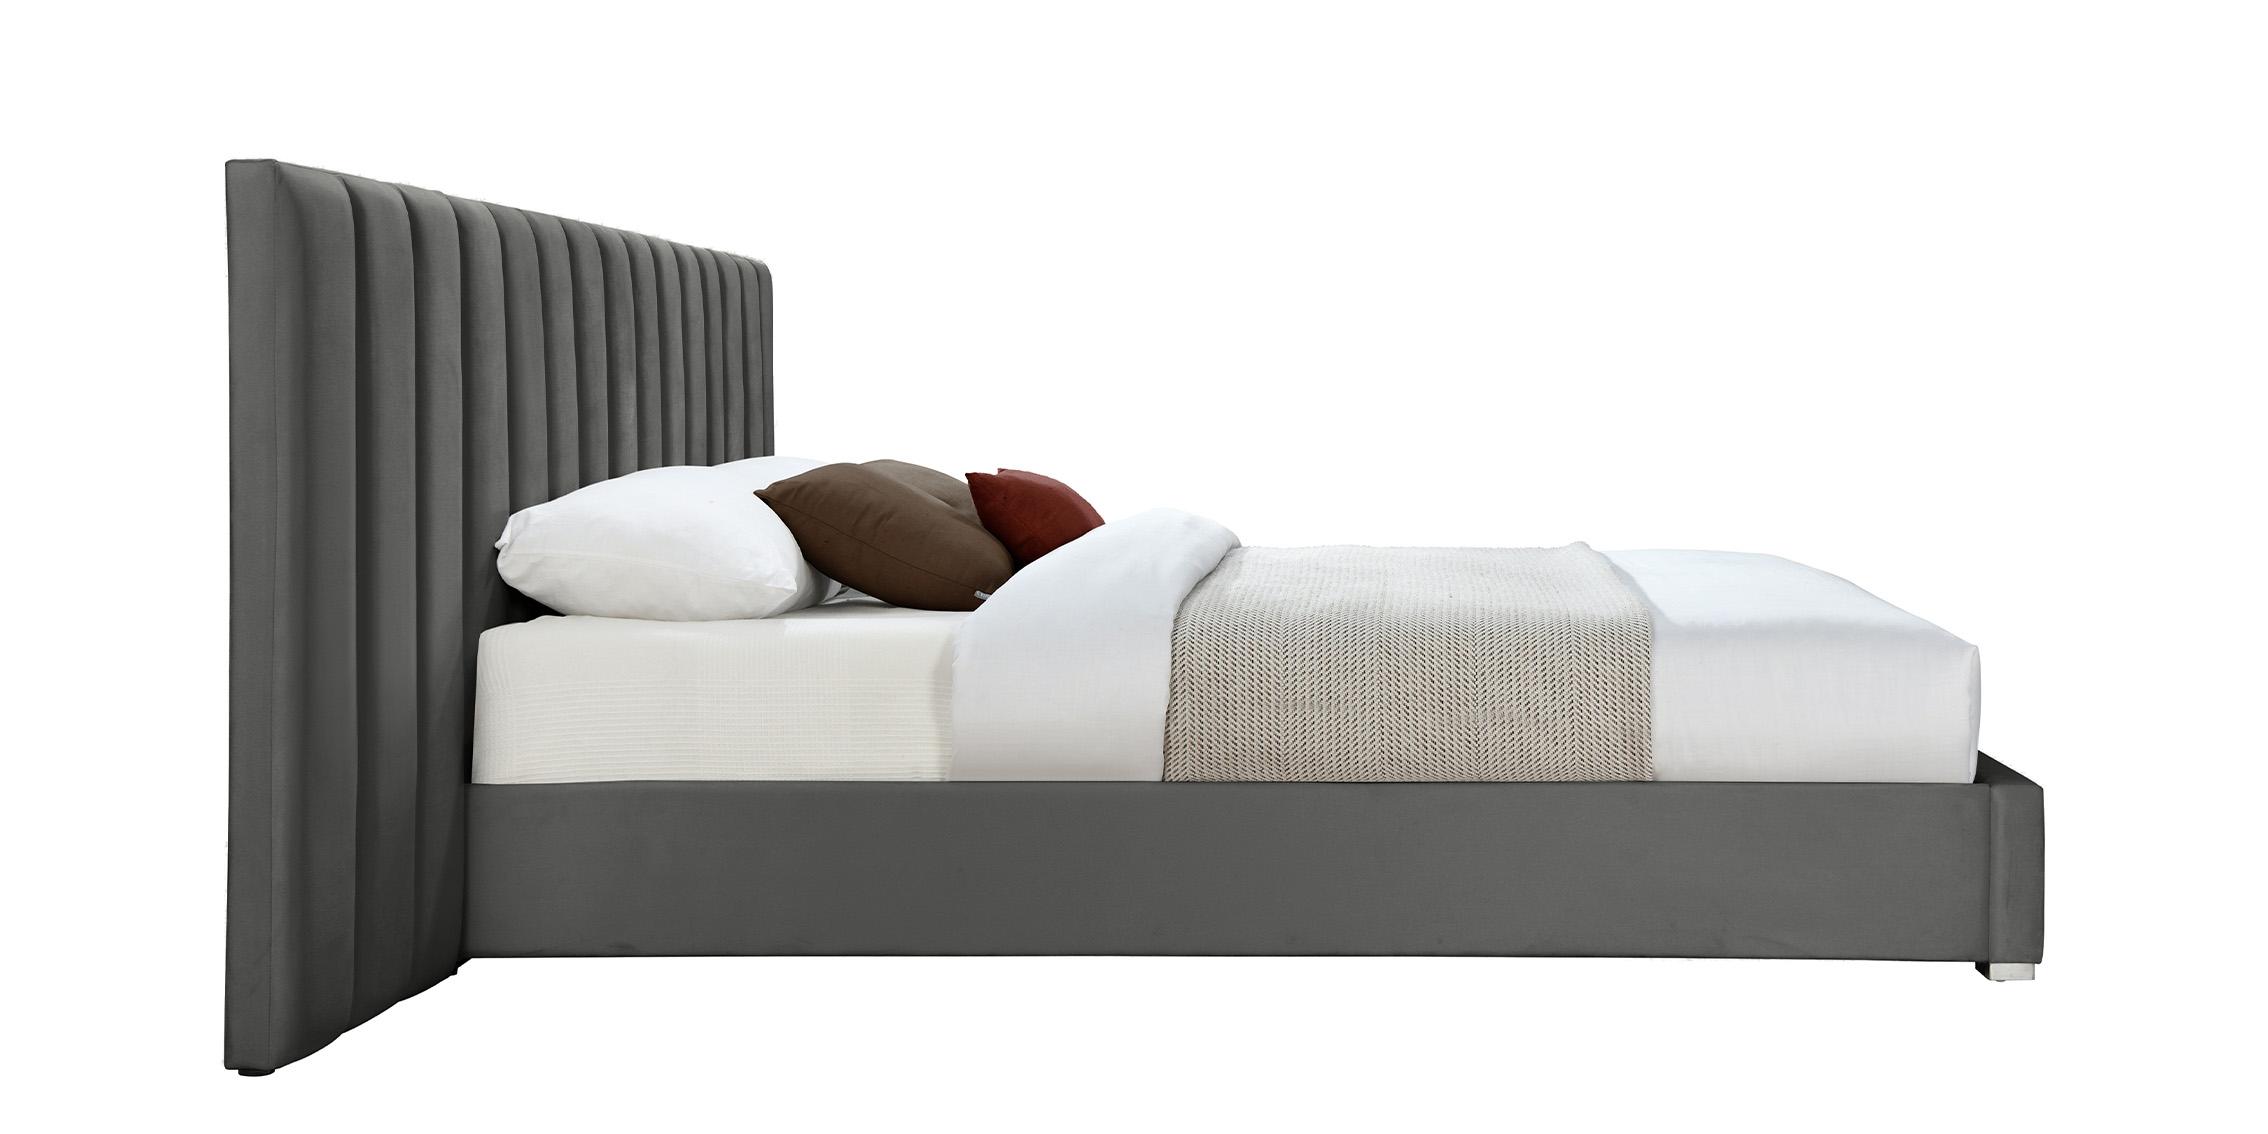 

    
PabloGrey-Q Meridian Furniture Platform Bed
